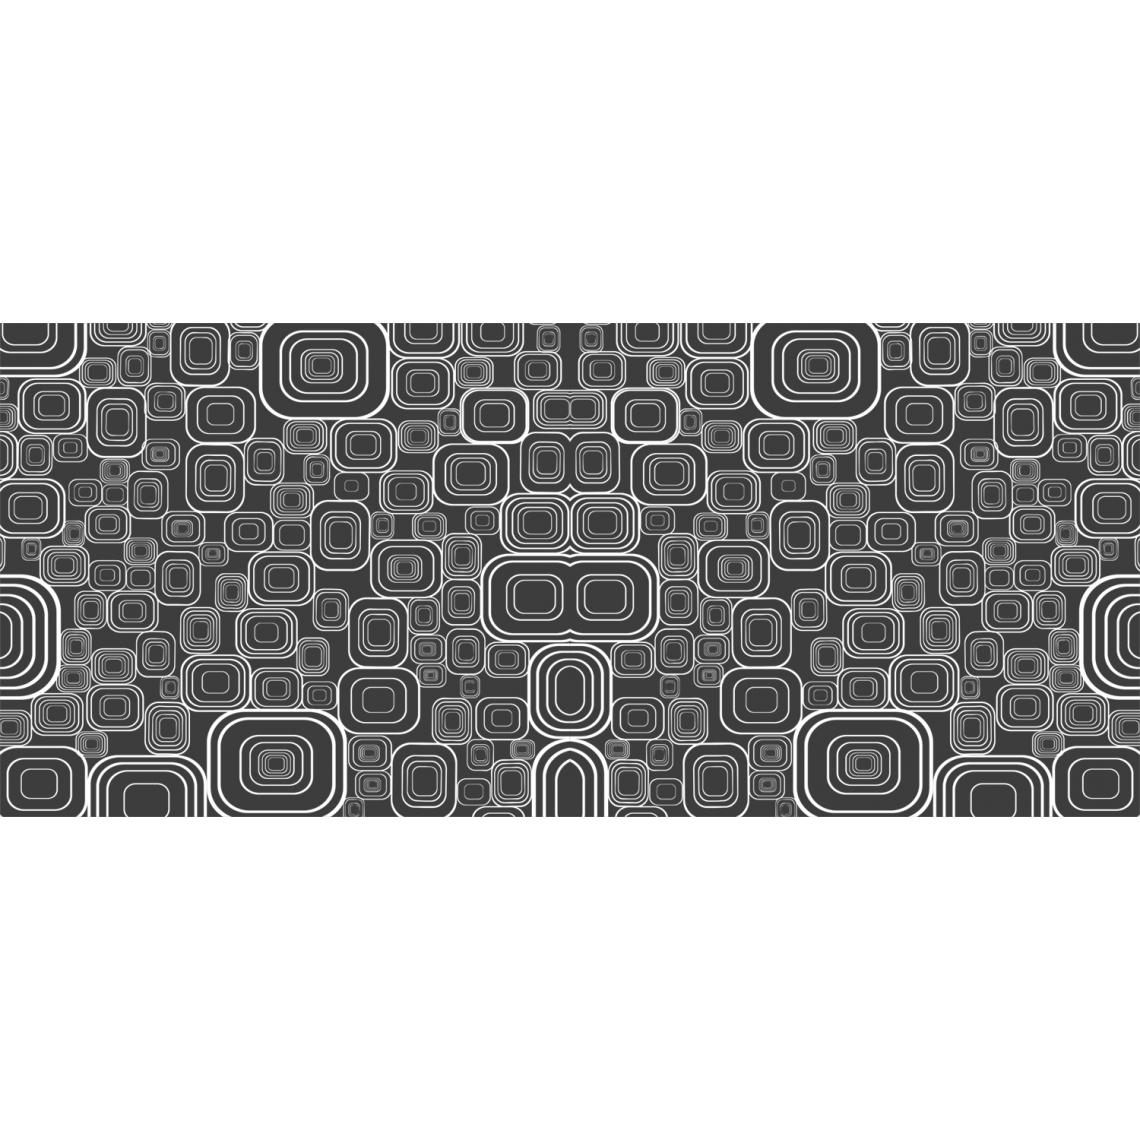 Alter - Tapis de couloir, 100% Made in Italy, Tapis antitache avec impression numérique, Tapis antidérapant et lavable, Modèle Alexzander, cm 250x65 - Tapis